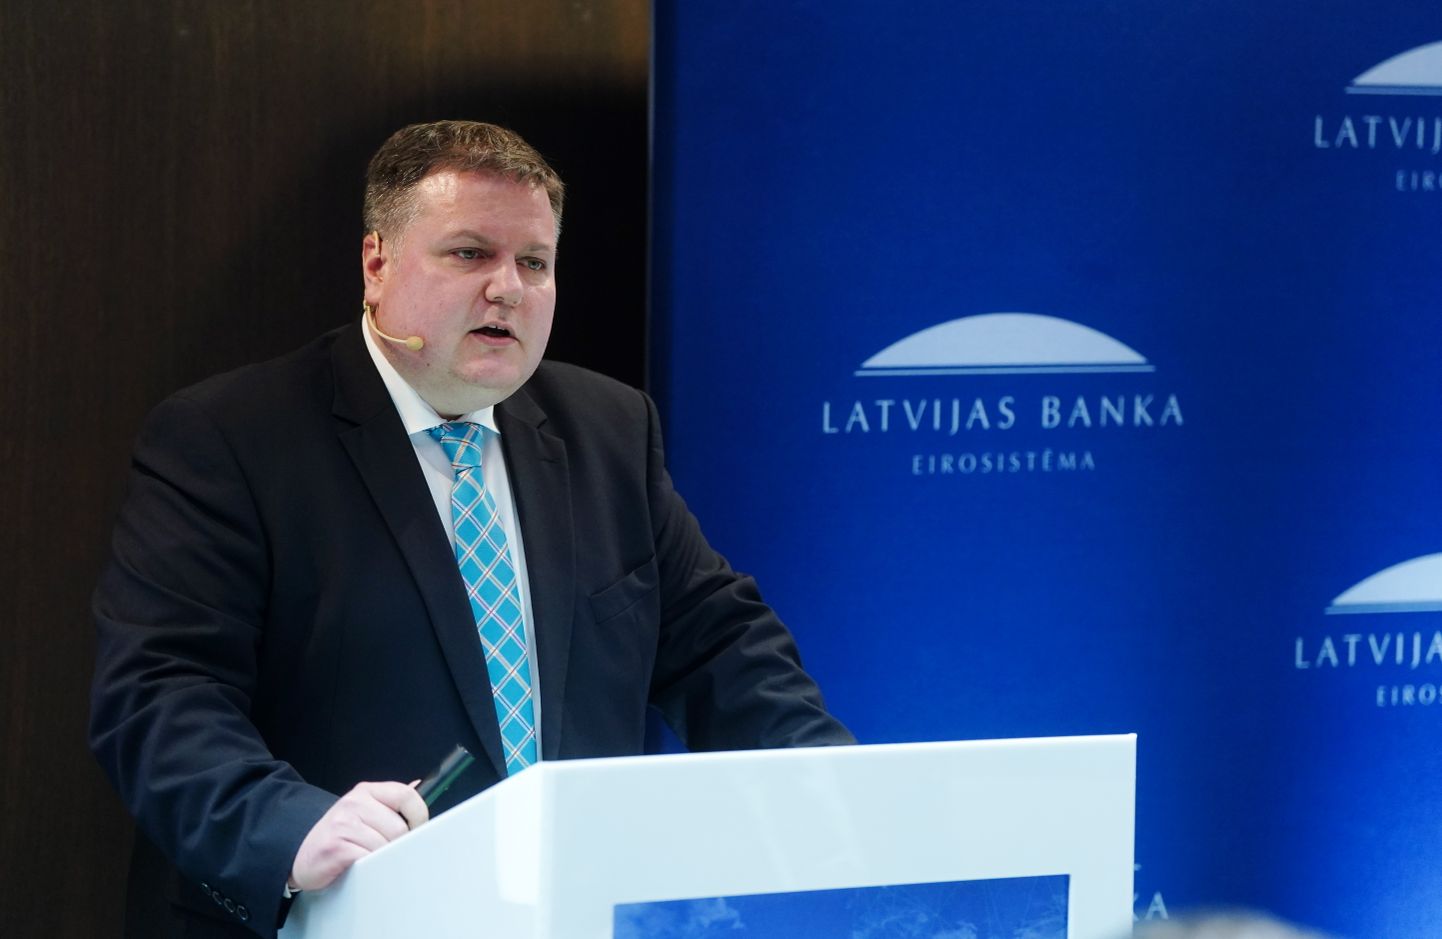 Latvijas Bankas Monetārās politikas pārvaldes vadītājs Uldis Rutkaste piedalās Latvijas Bankas rīkotajā ekspertu sarunā "Kā panākt noturīgu Latvijas tautsaimniecības izaugsmi?".